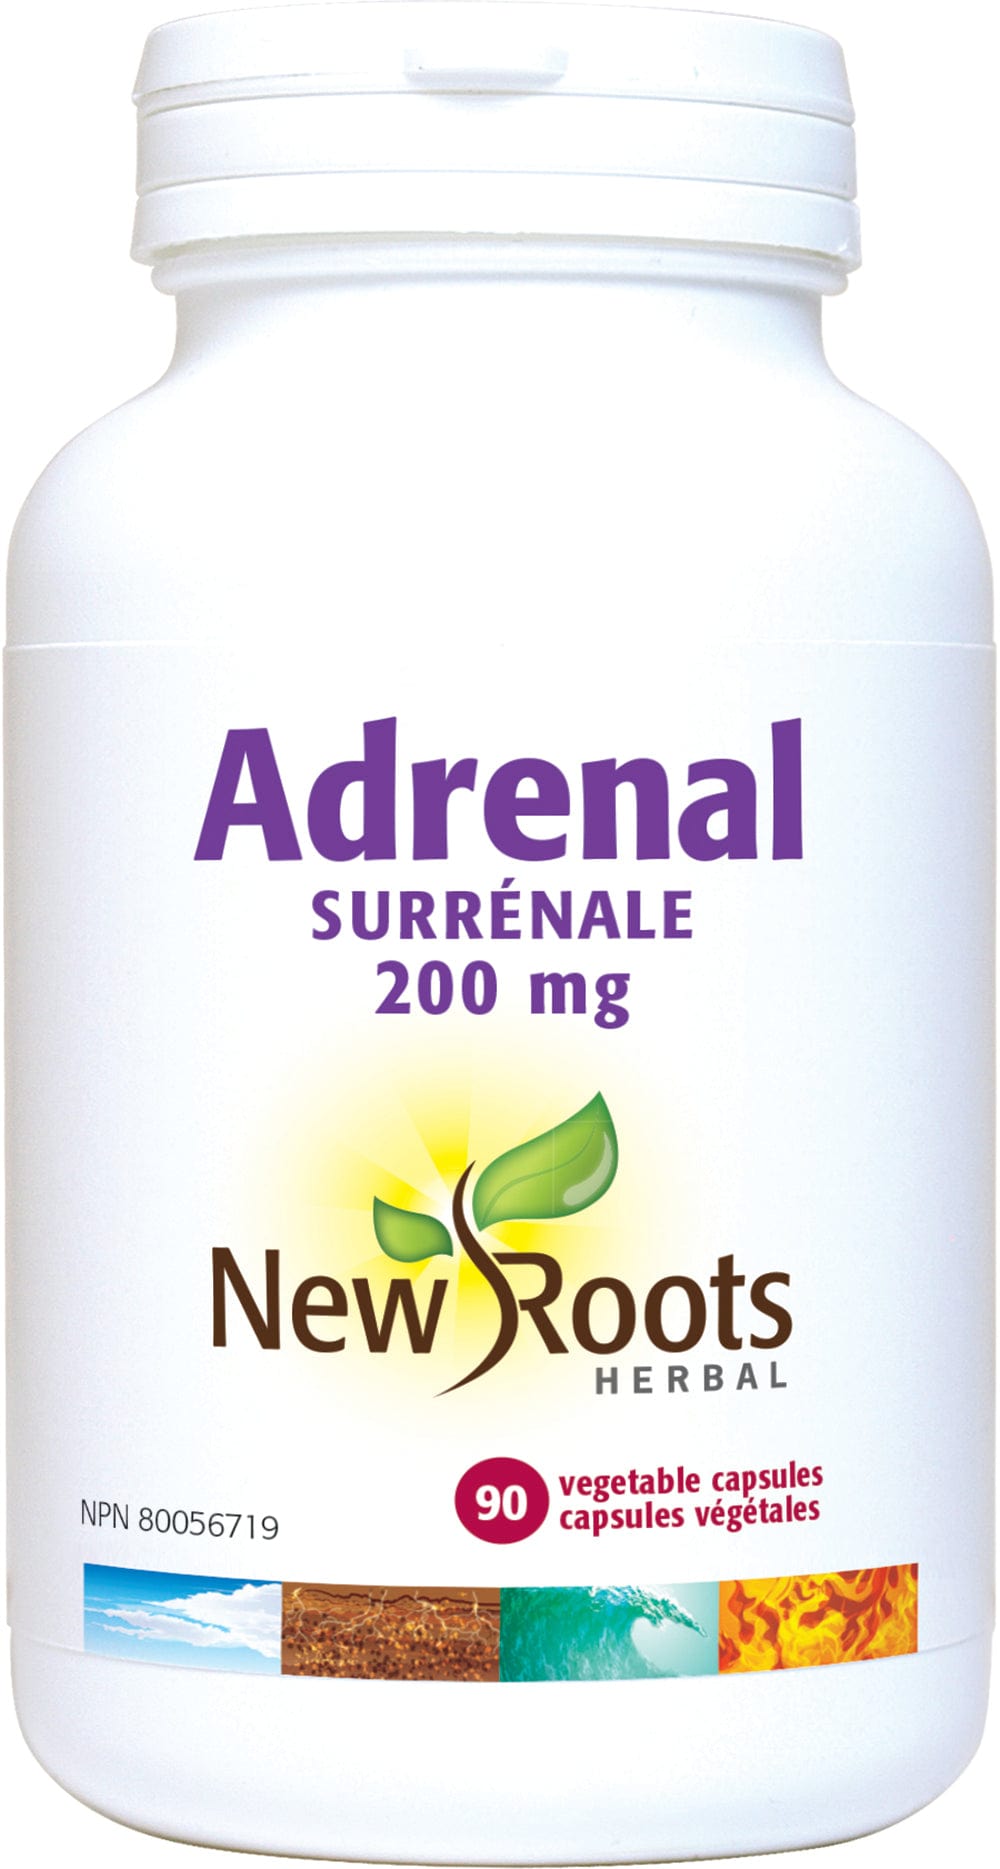 NEW ROOTS HERBAL Suppléments Adrenal 200mg (surénale avec menthe poivrée) 90caps